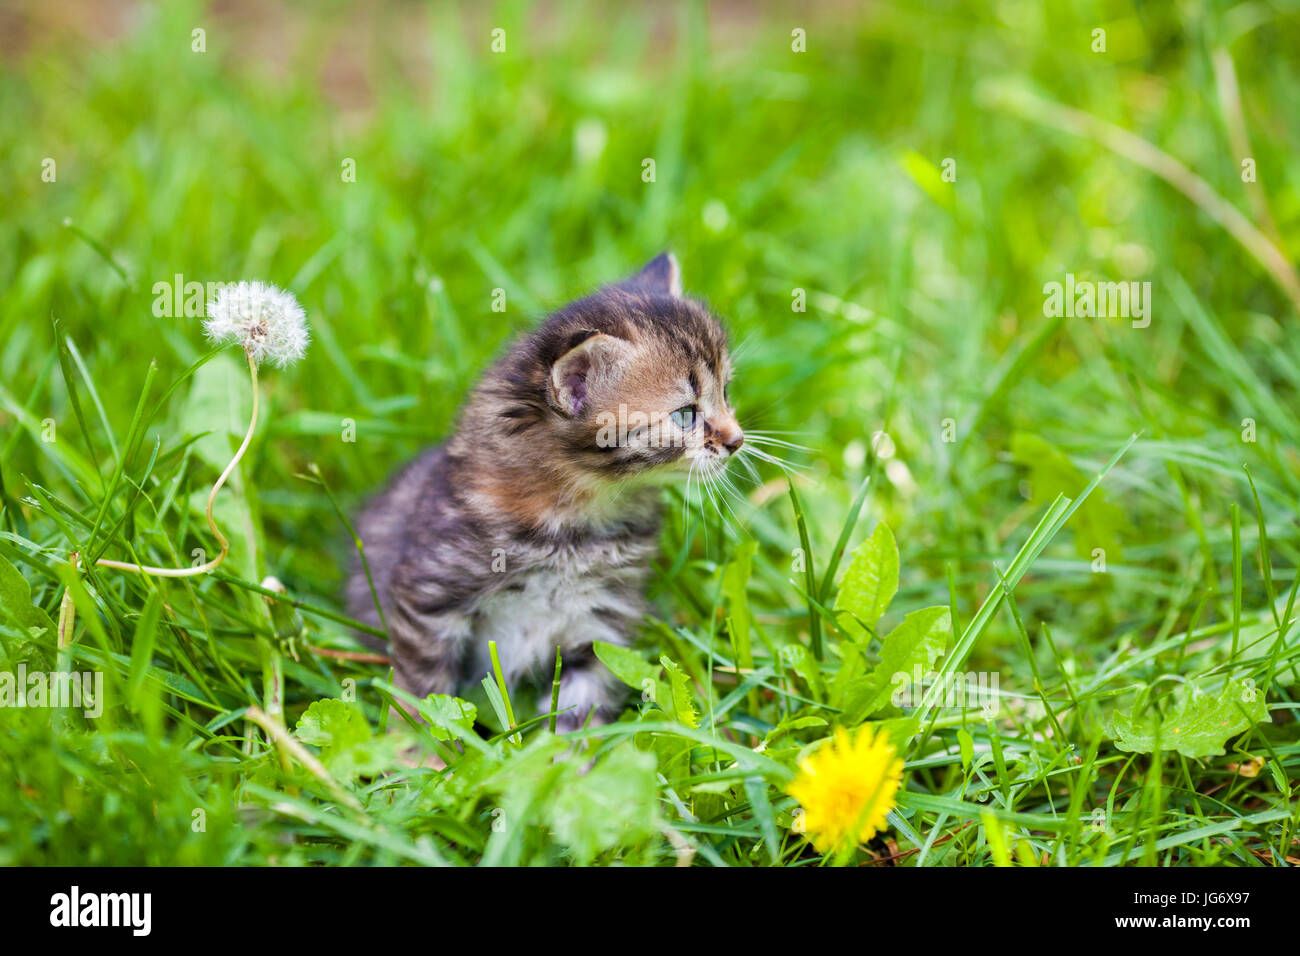 Pequeño gatito sentado en el pasto verde Foto de stock